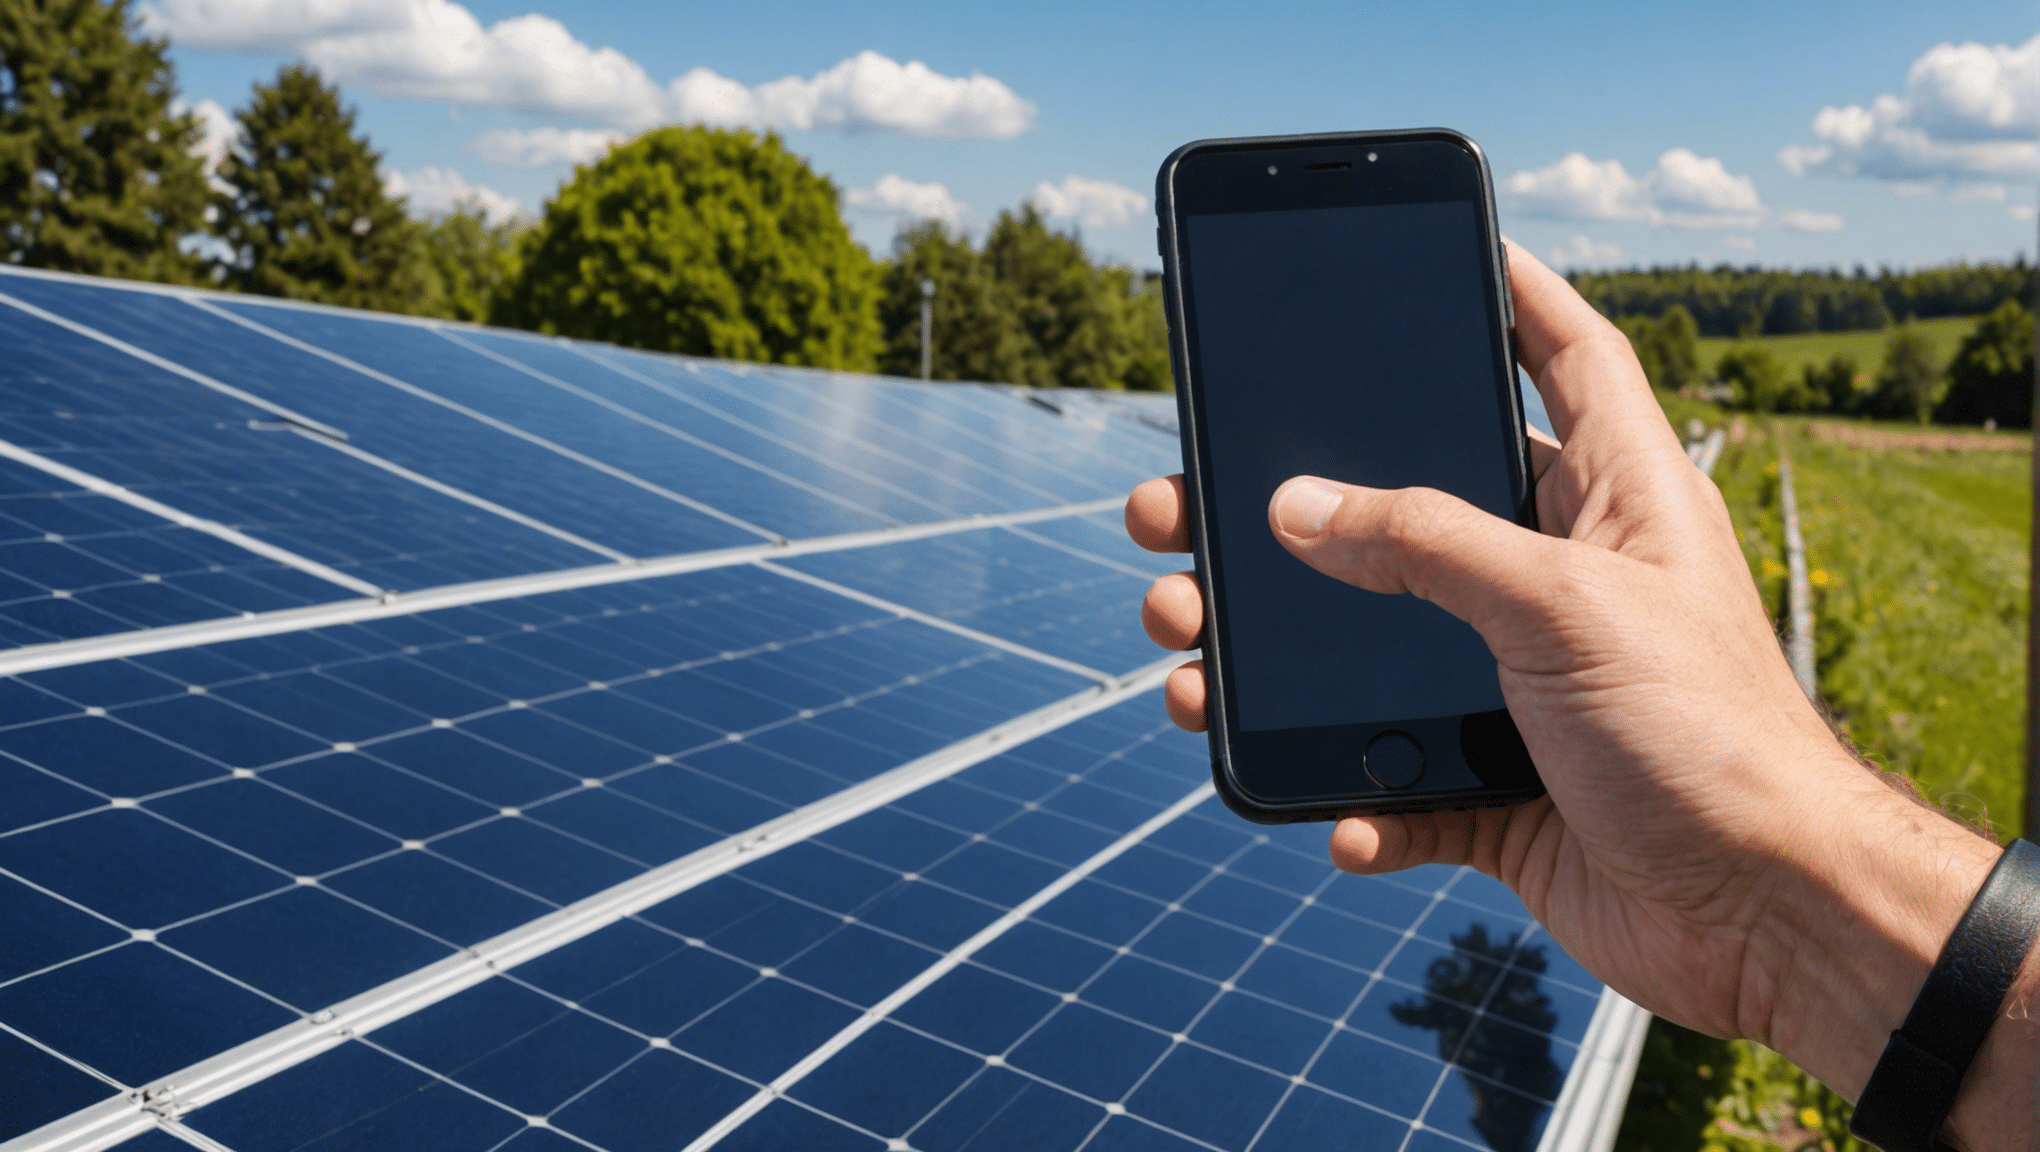 découvrez comment connecter facilement vos panneaux solaires à votre smartphone et profiter de l'énergie solaire à tout moment. suivez nos conseils pour une installation simple et efficace !